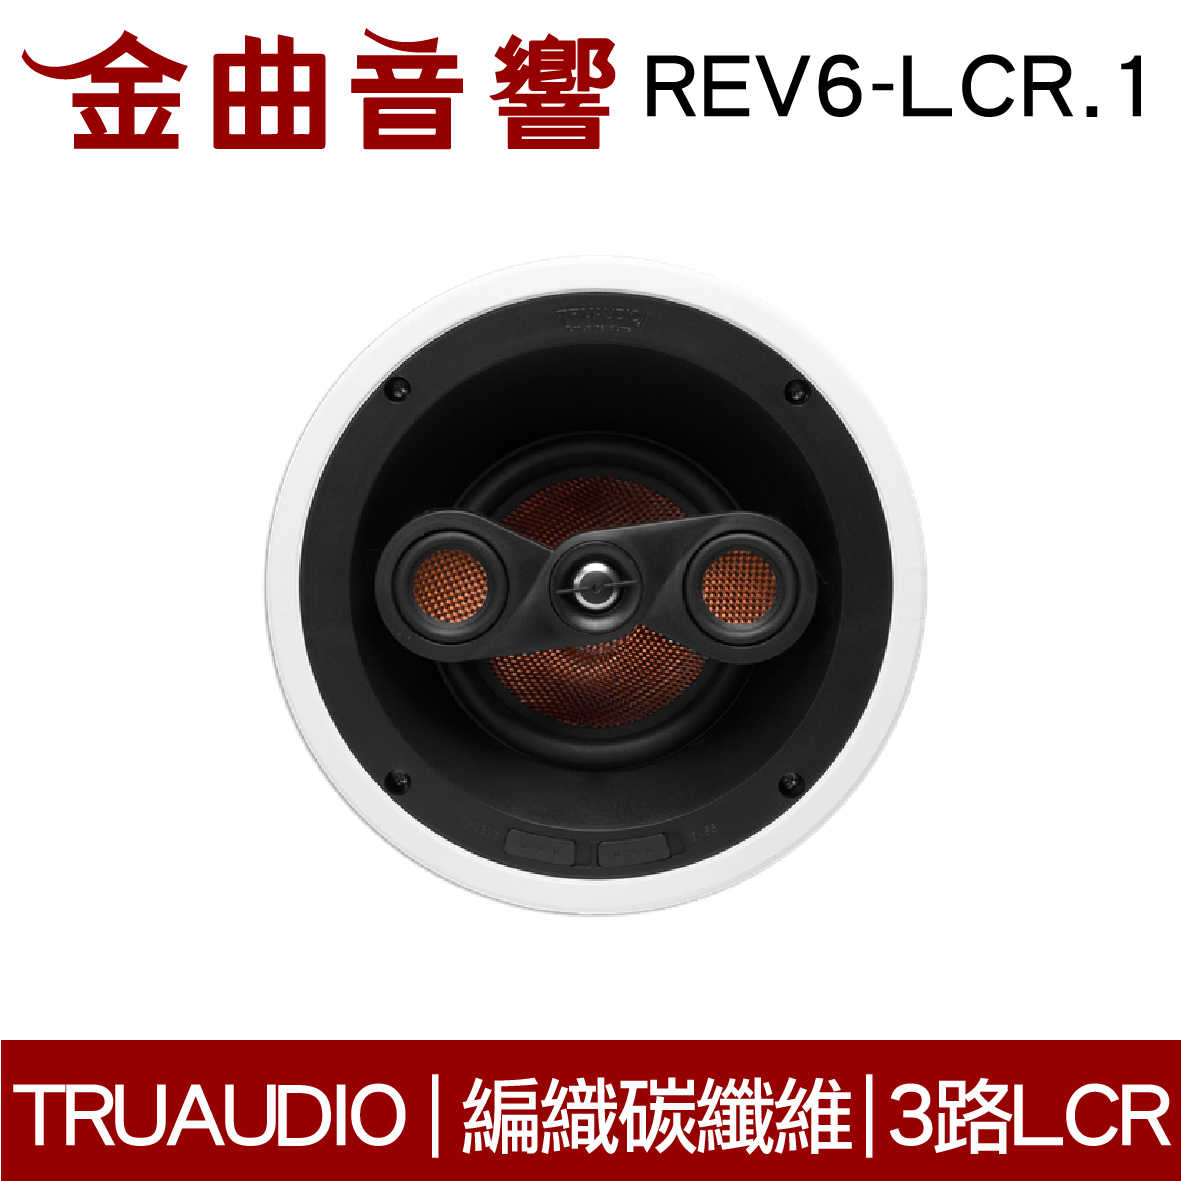 Truaudio REV6-LCR.1 吸頂式 雙極環繞 揚聲器 | 金曲音響